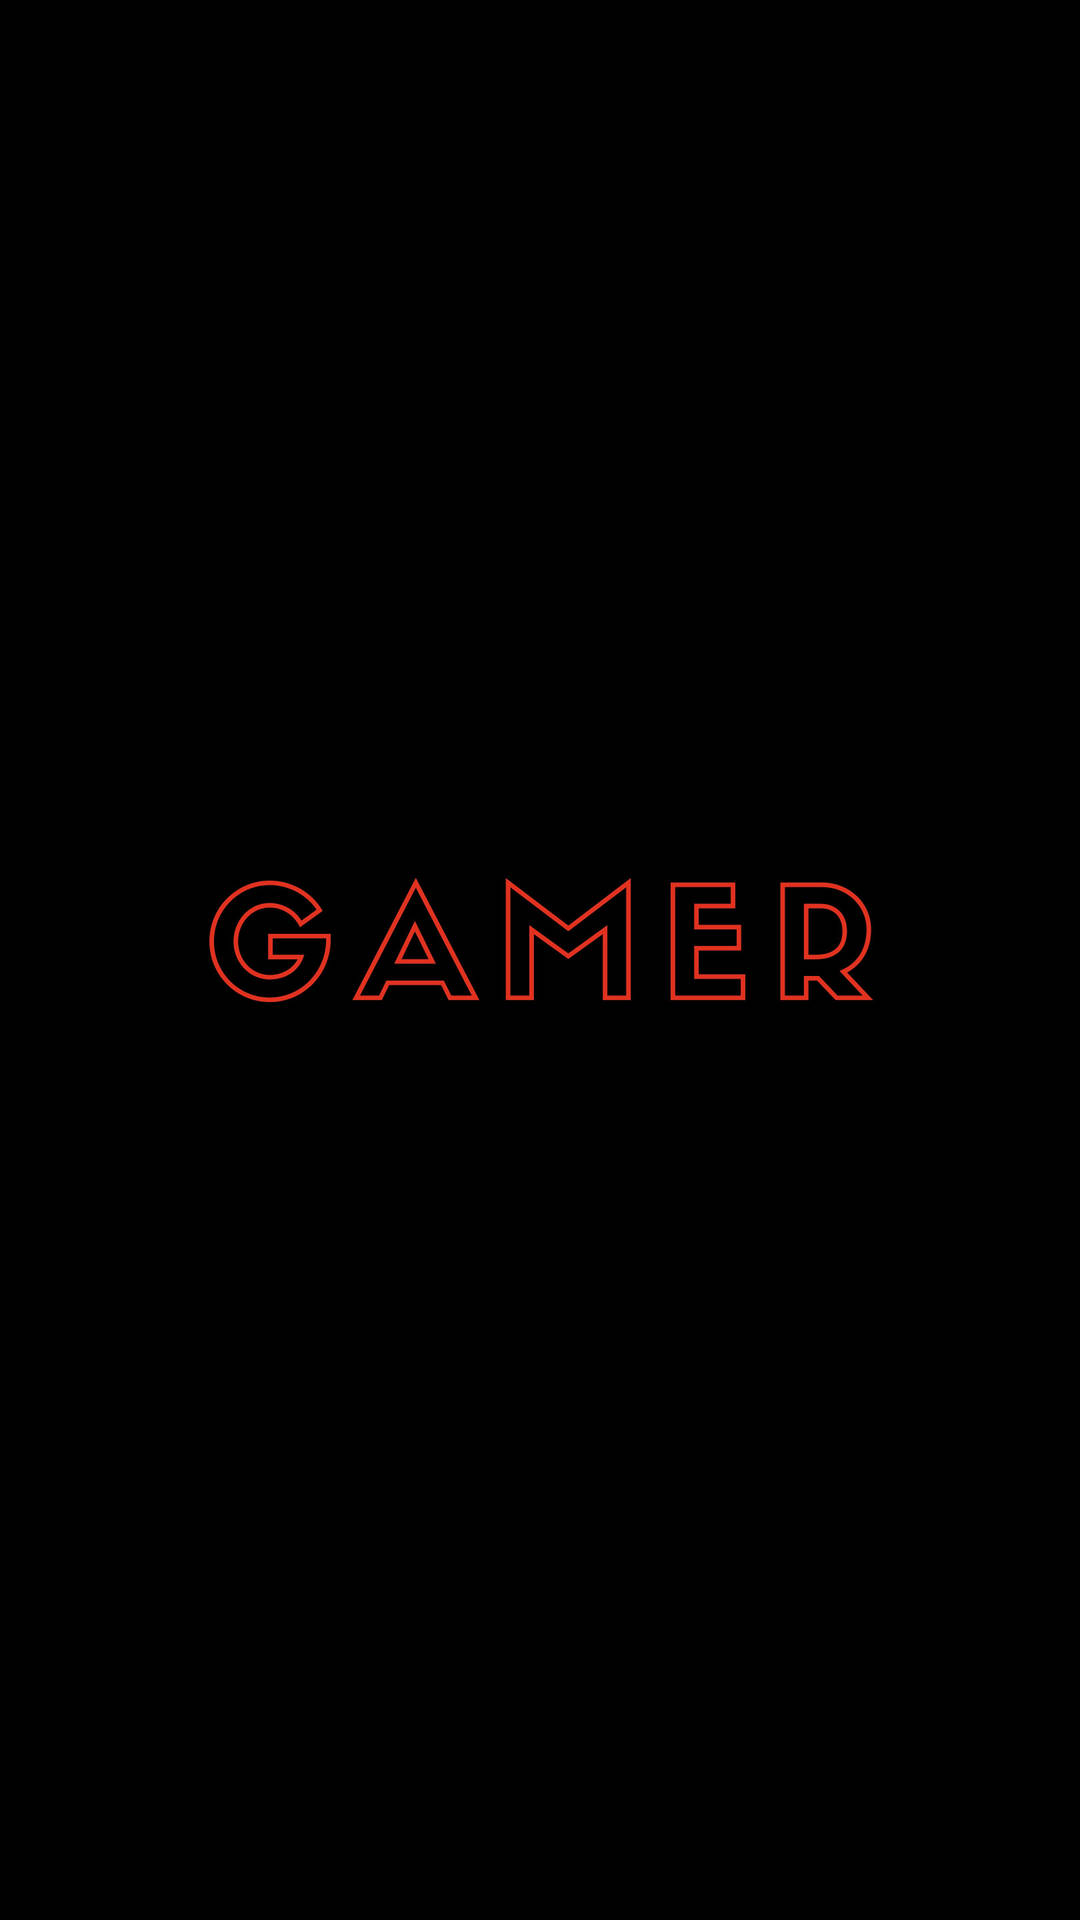 Gamer Logo In Black